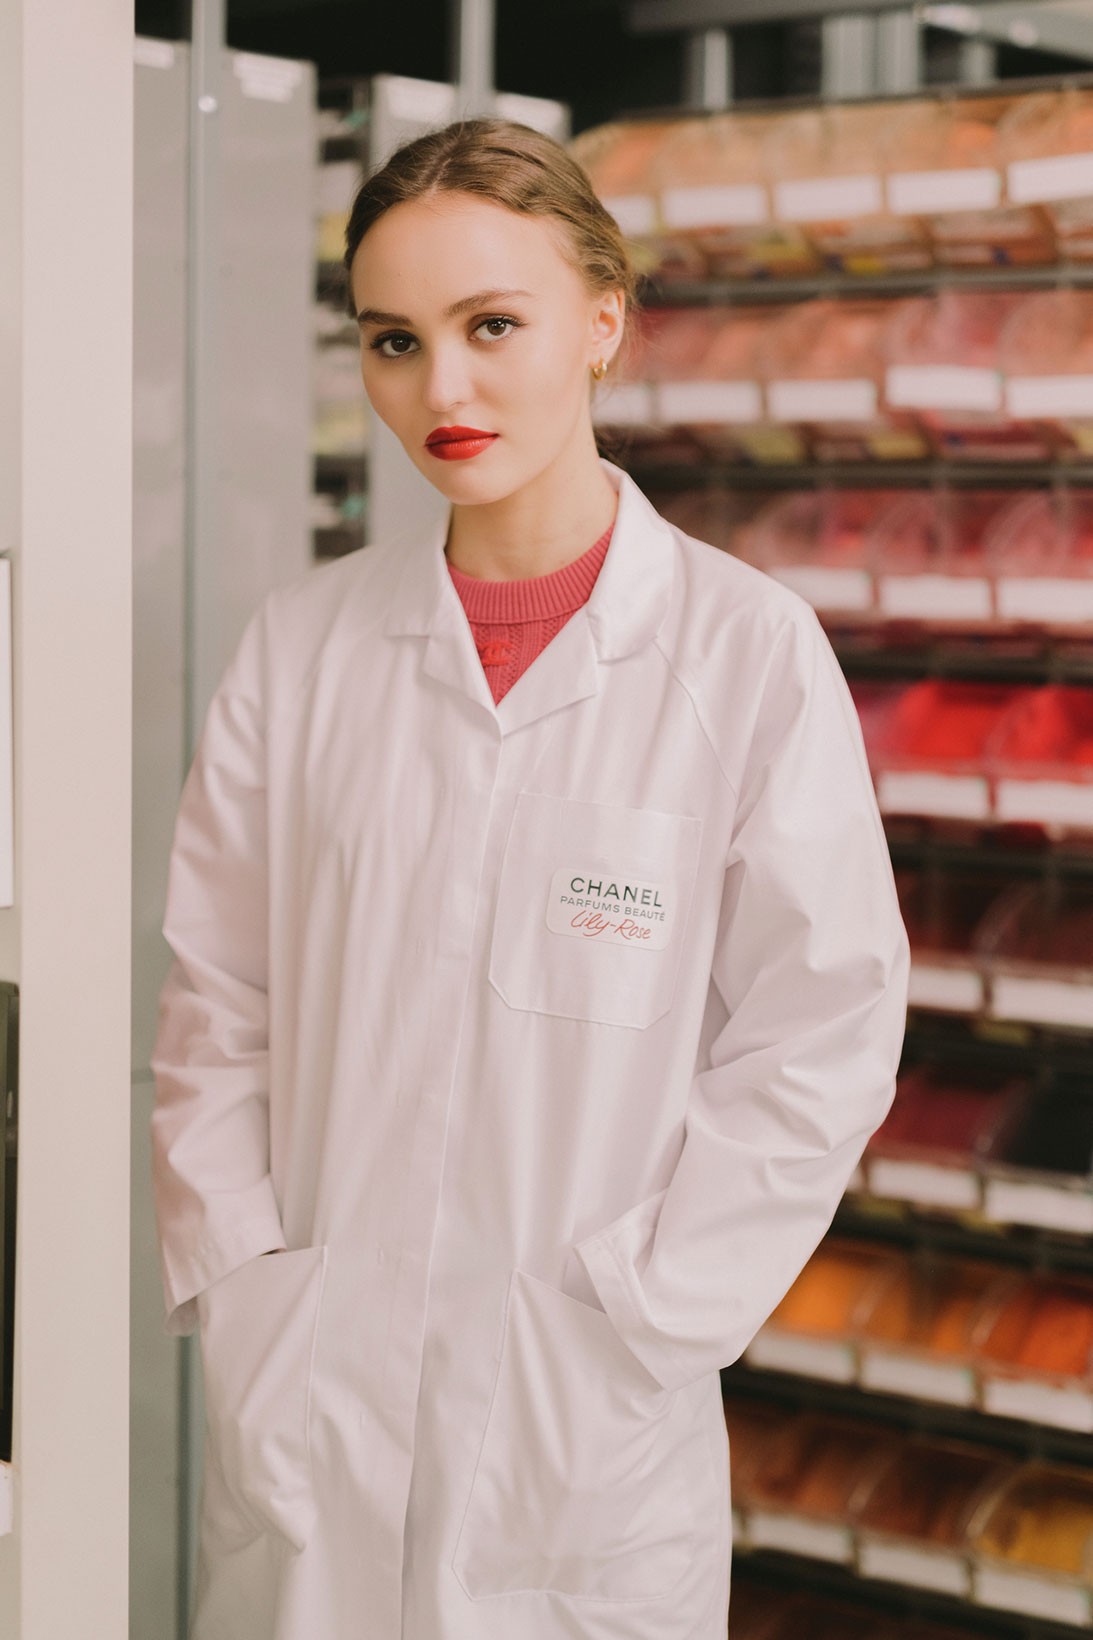 Лили-Роуз Депп прорекламировала новую помаду Chanel в образе лаборантки (фото 1)